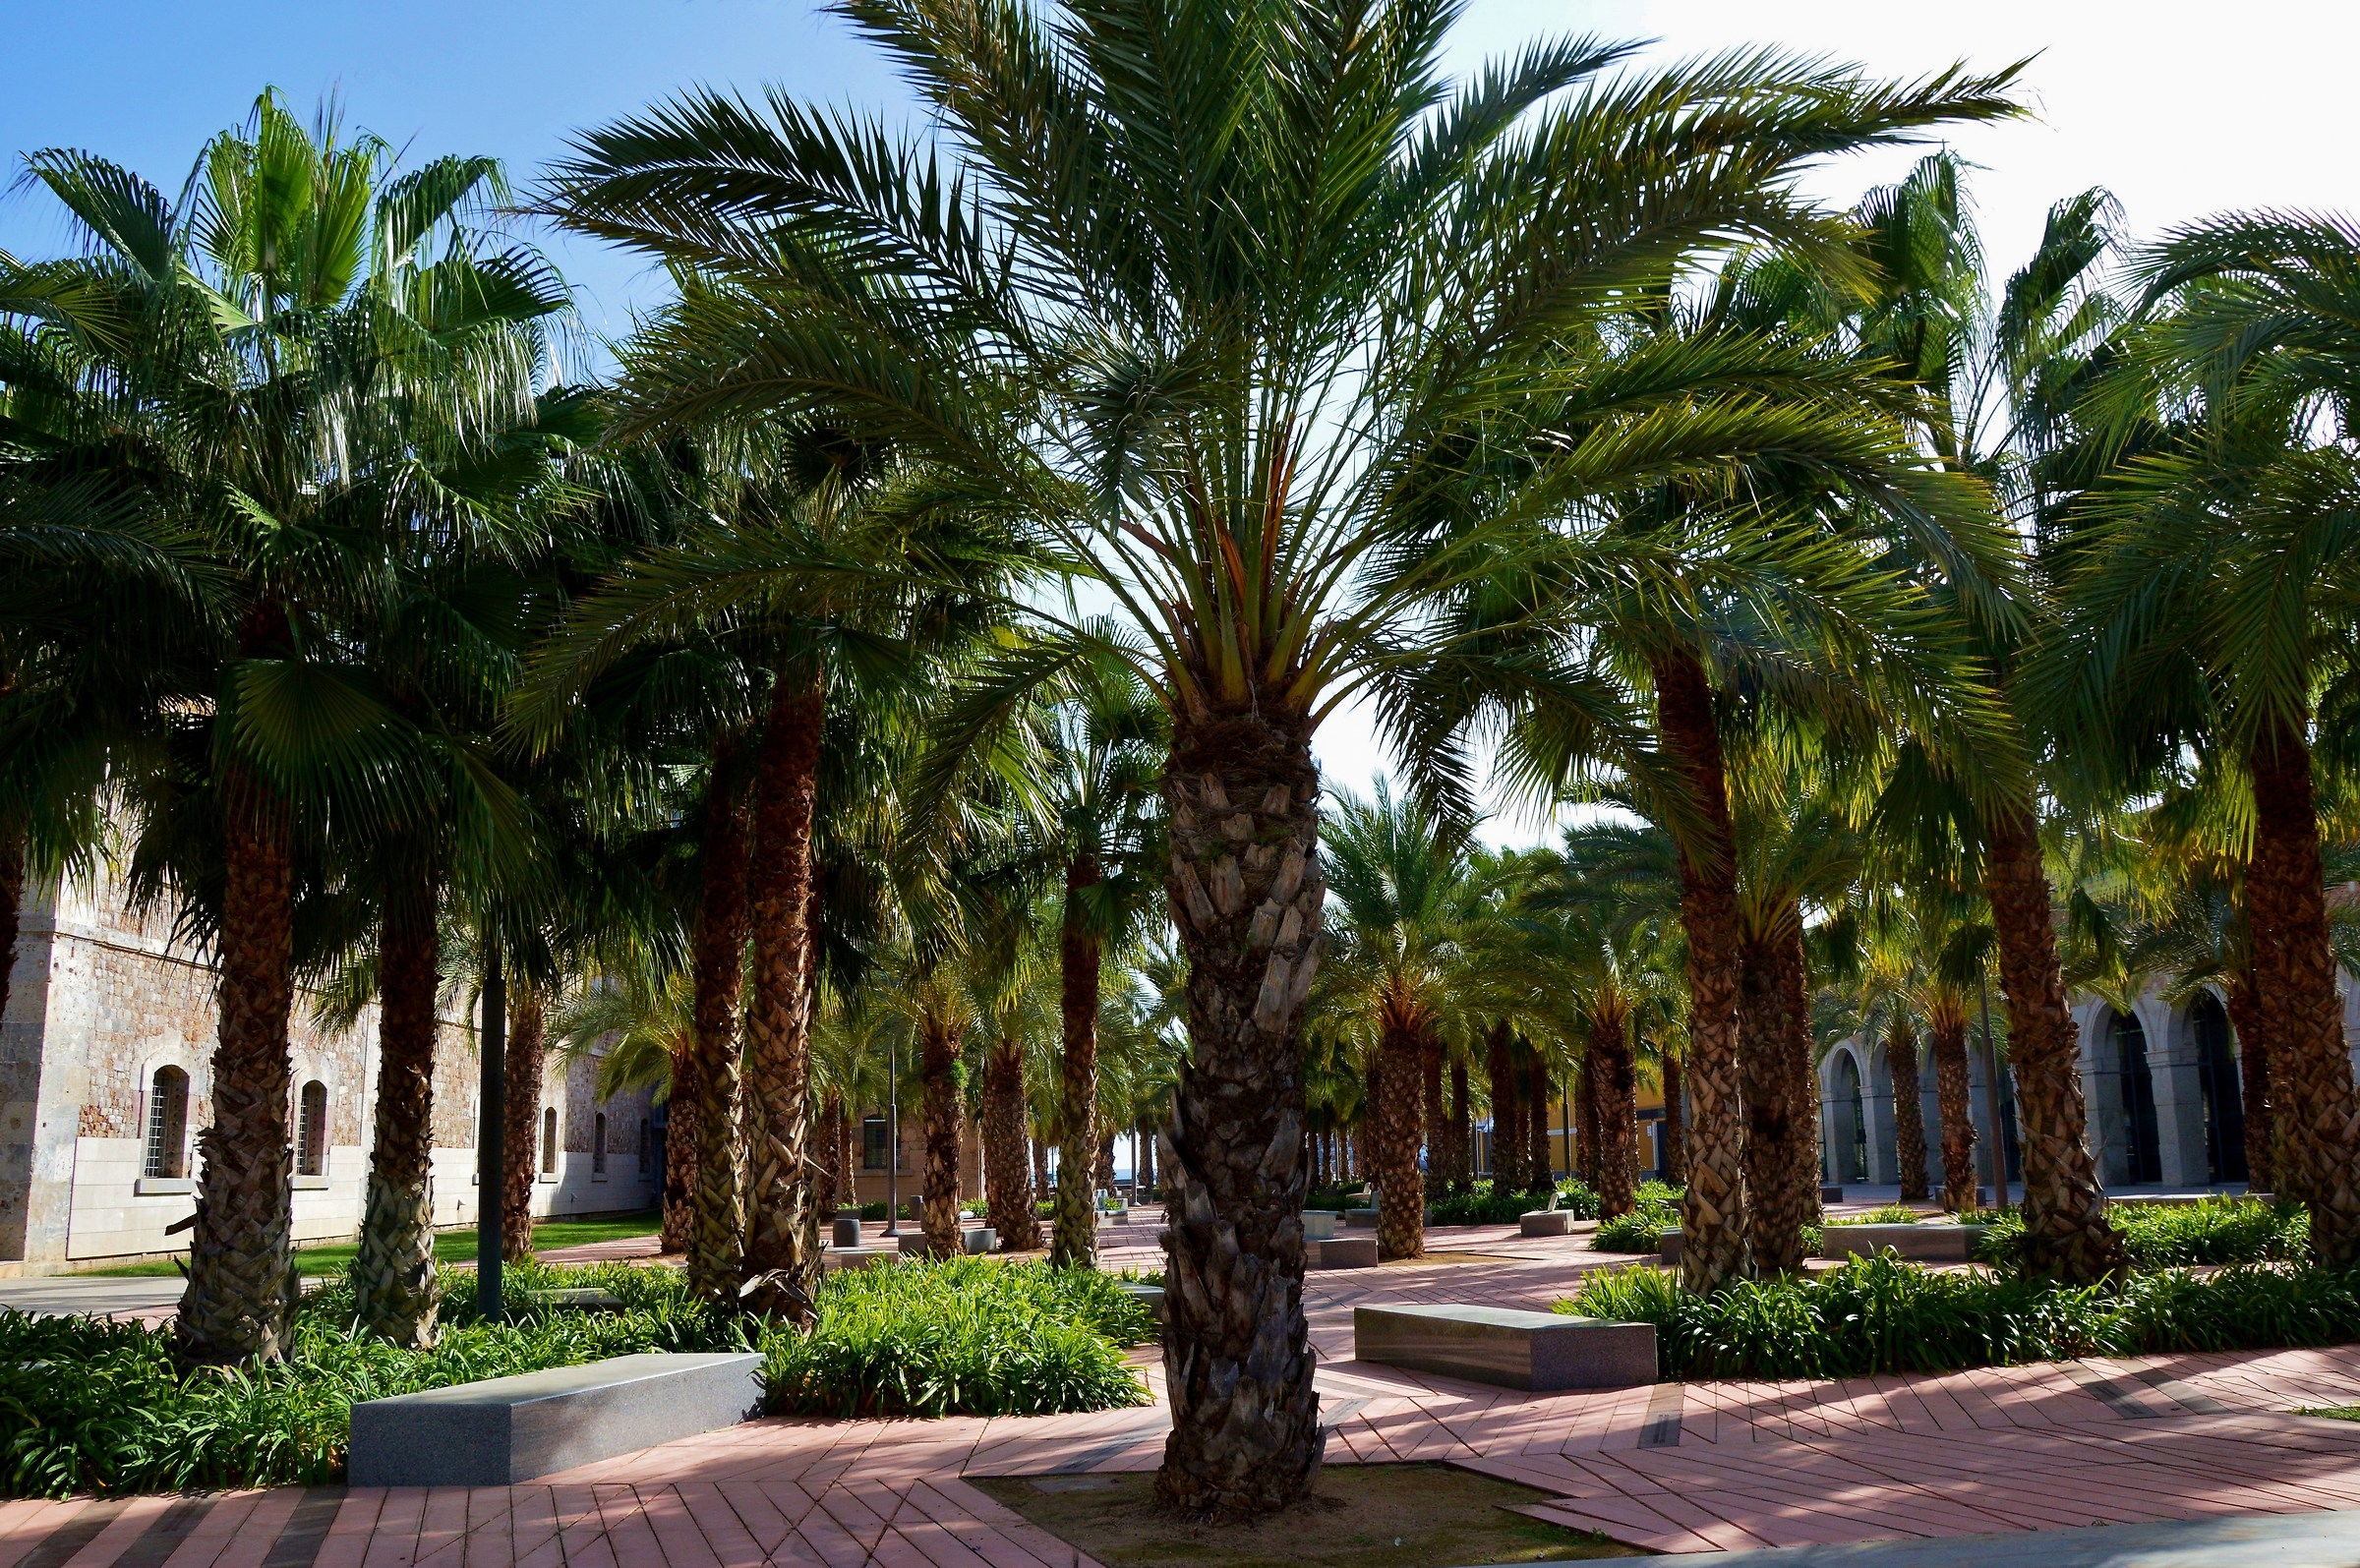 Zona relax all'ombra delle palme nell'area pedonale...